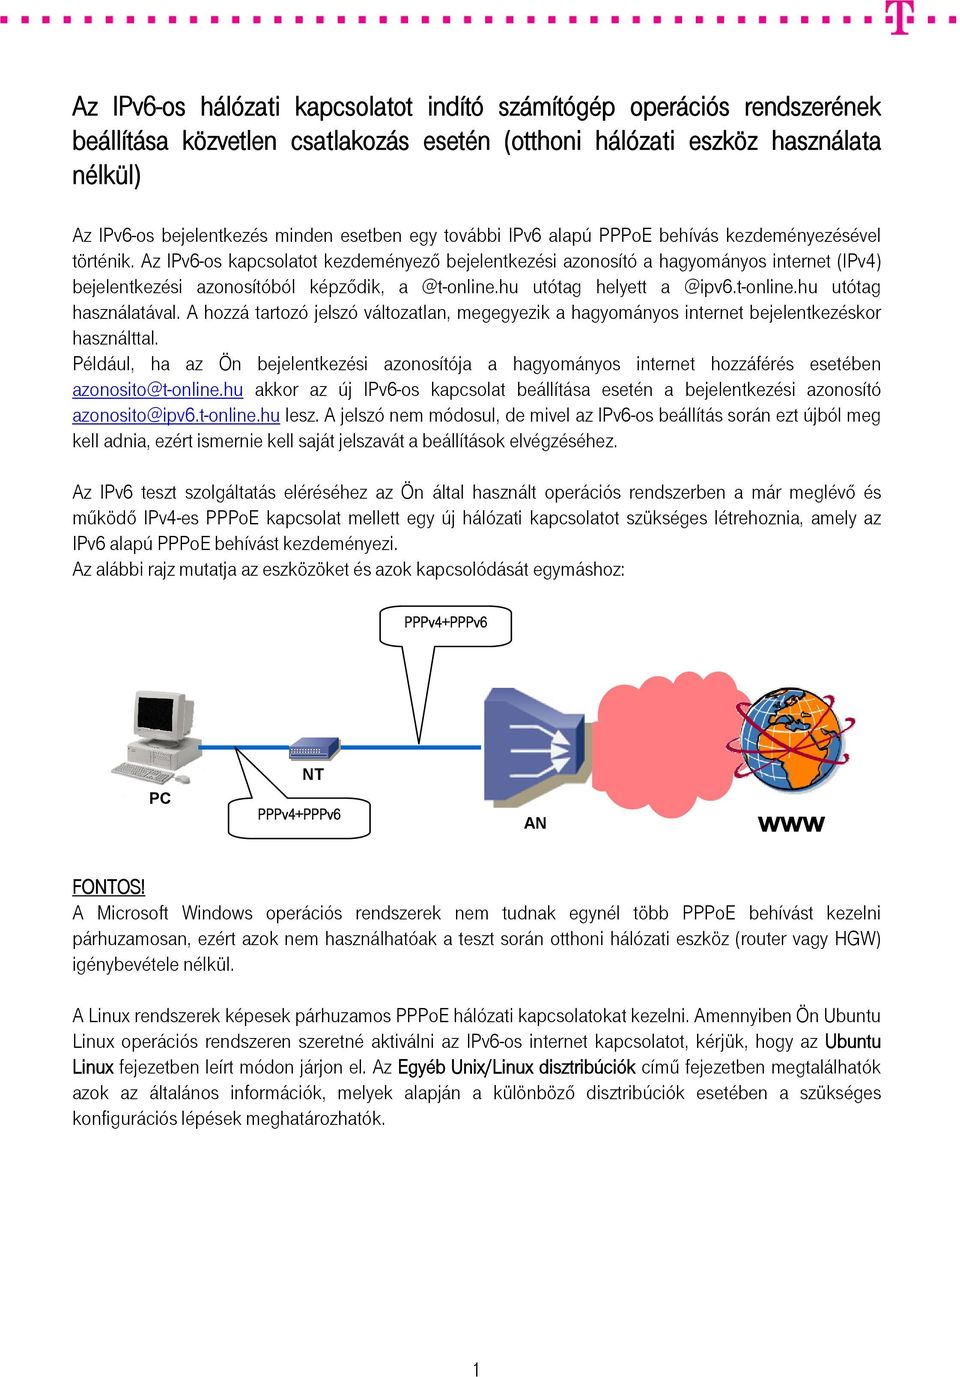 Az IPv6-os kapcsolatot kezdeményező bejelentkezési azonosító a hagyományos internet (IPv4) bejelentkezési azonosítóból képződik, a @t-online.hu utótag helyett a @ipv6.t-online.hu utótag használatával.